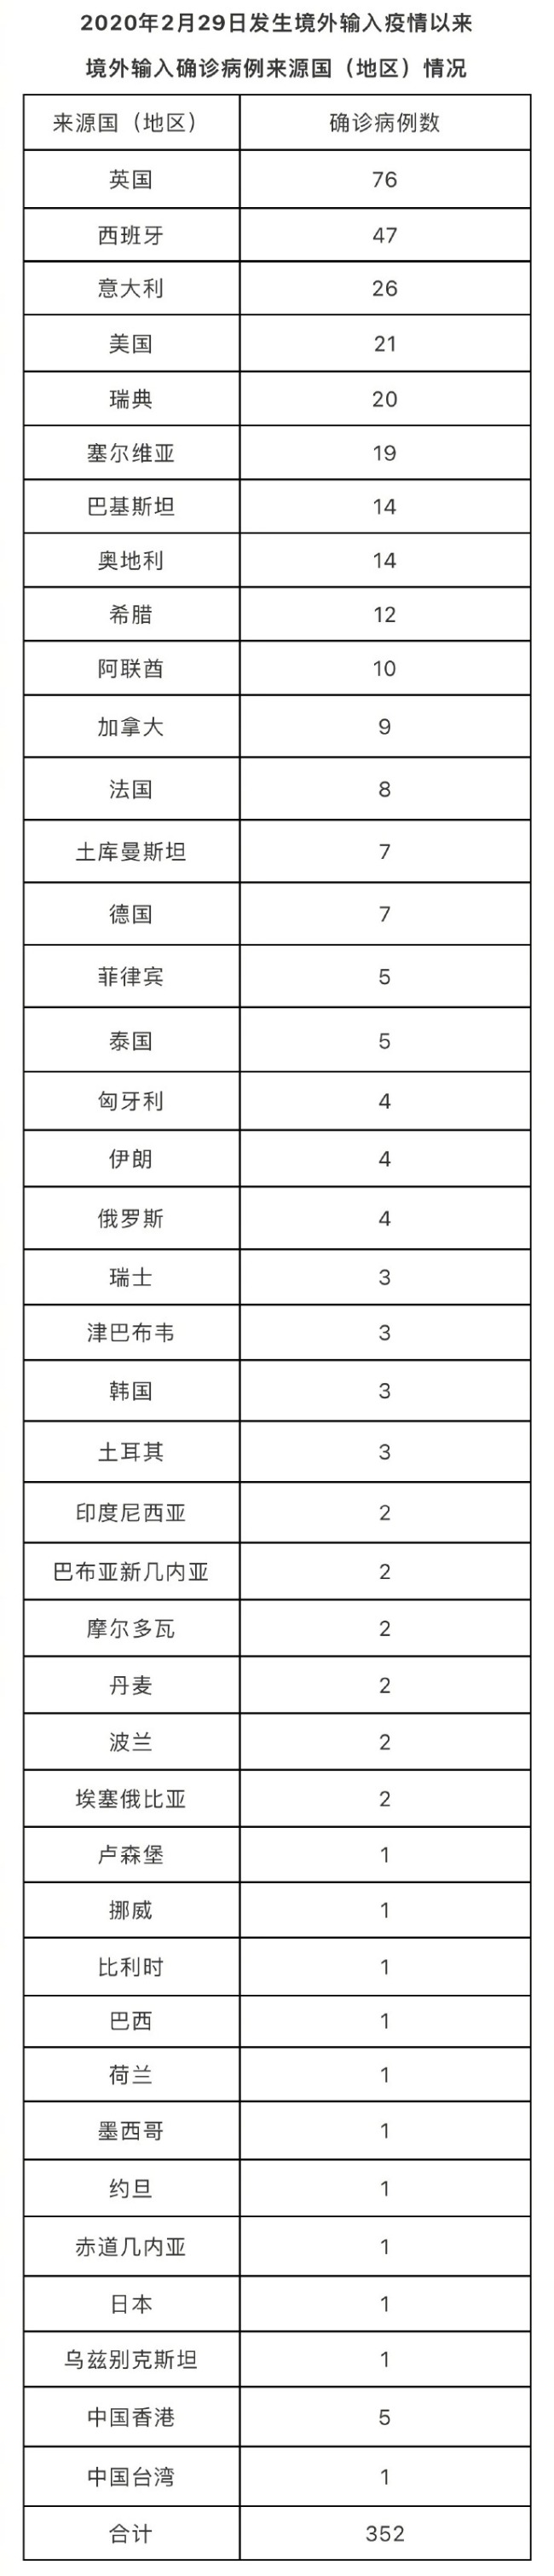 北京昨日新增6例本土确诊病例、2例无症状感染者